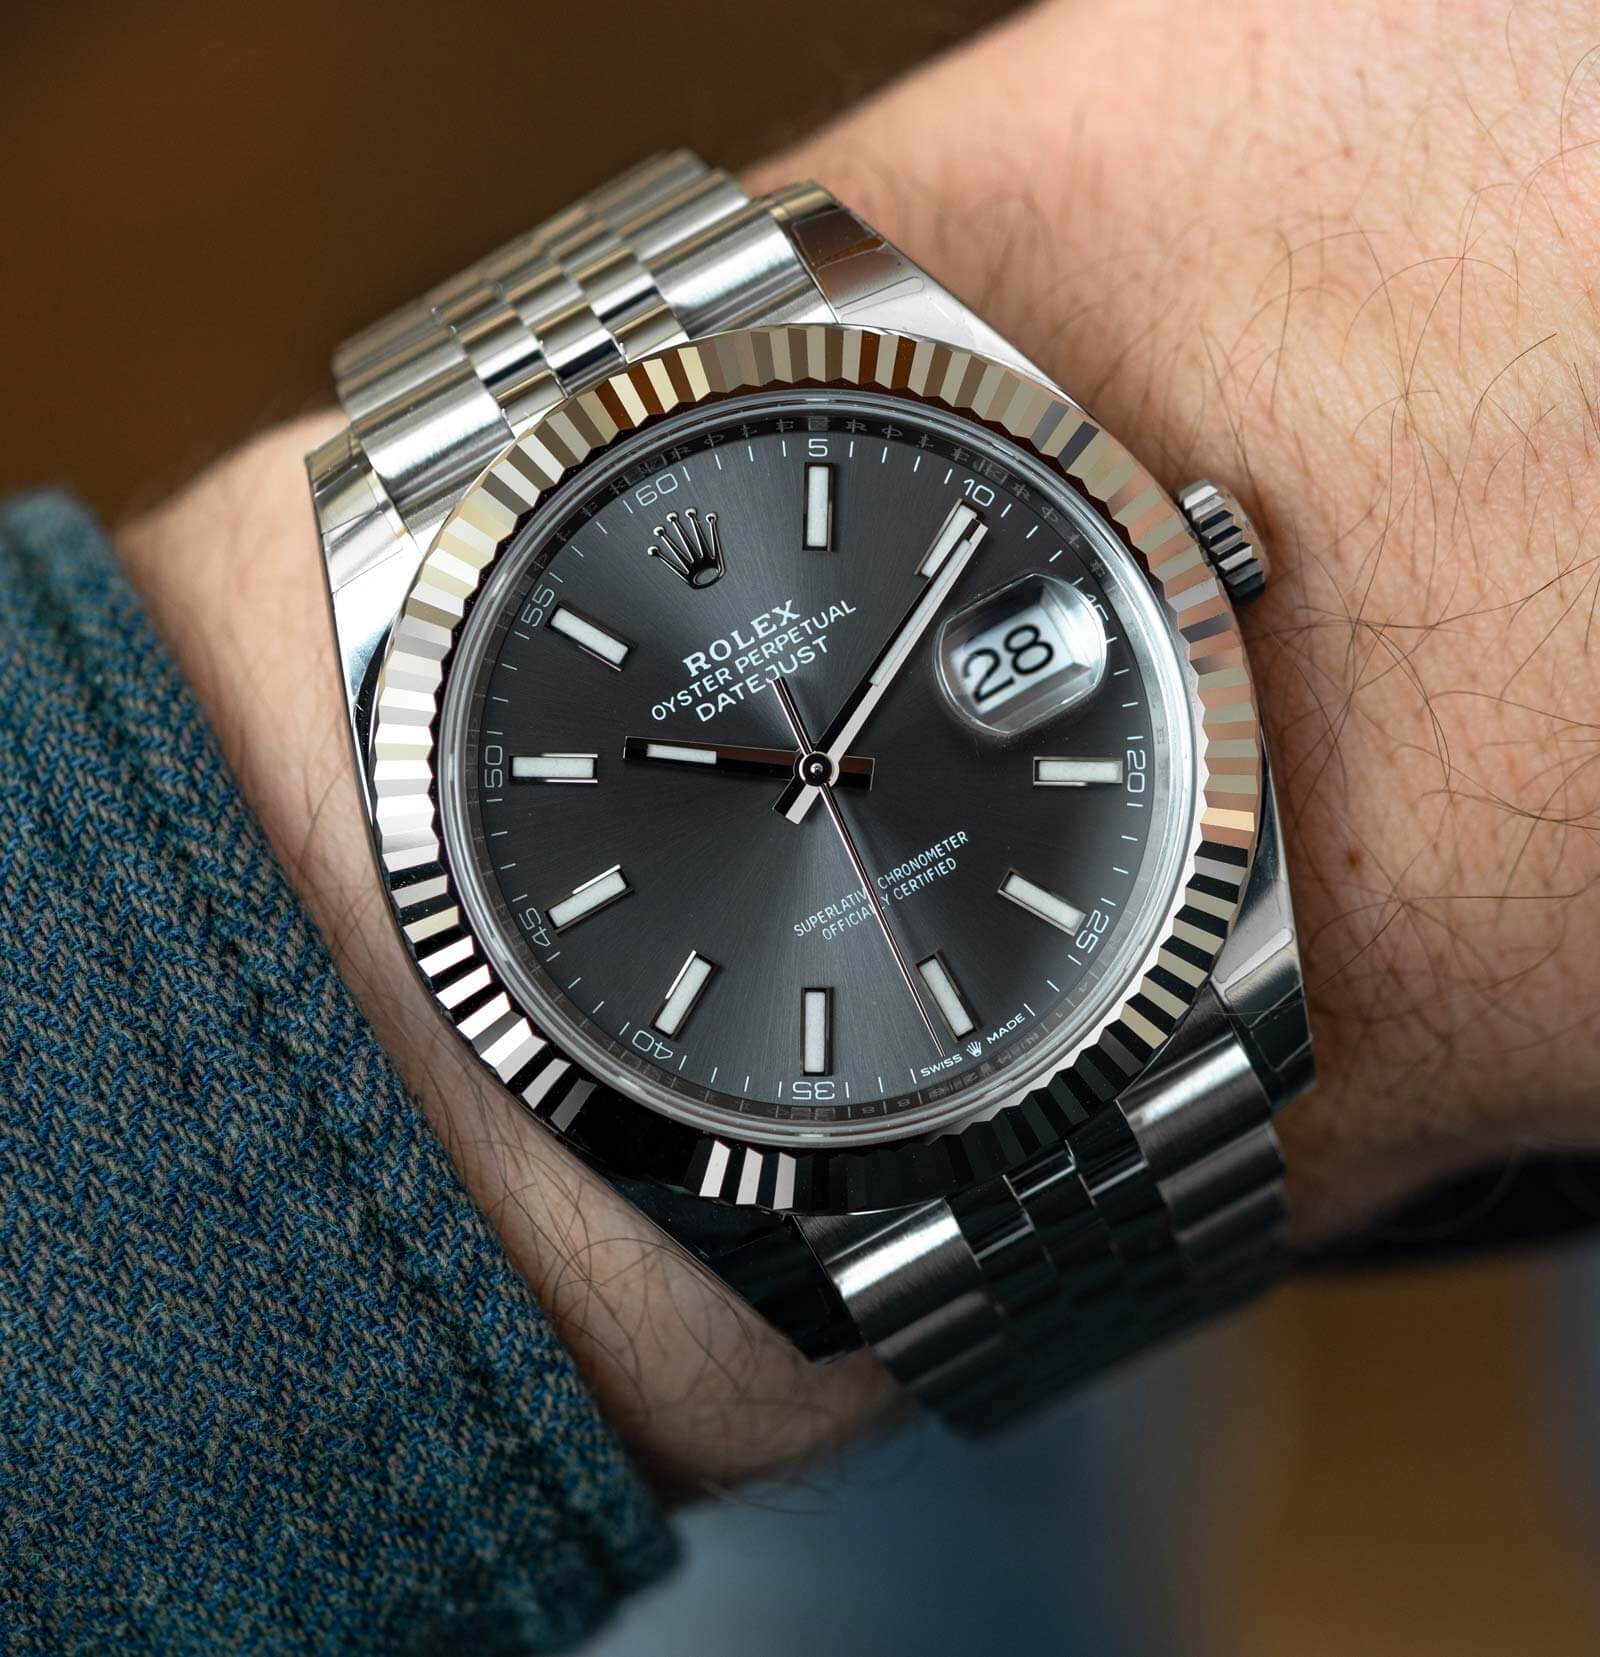 Thu mua đồng hồ Rolex Datejust chính hãng tại muadonghocu.vn